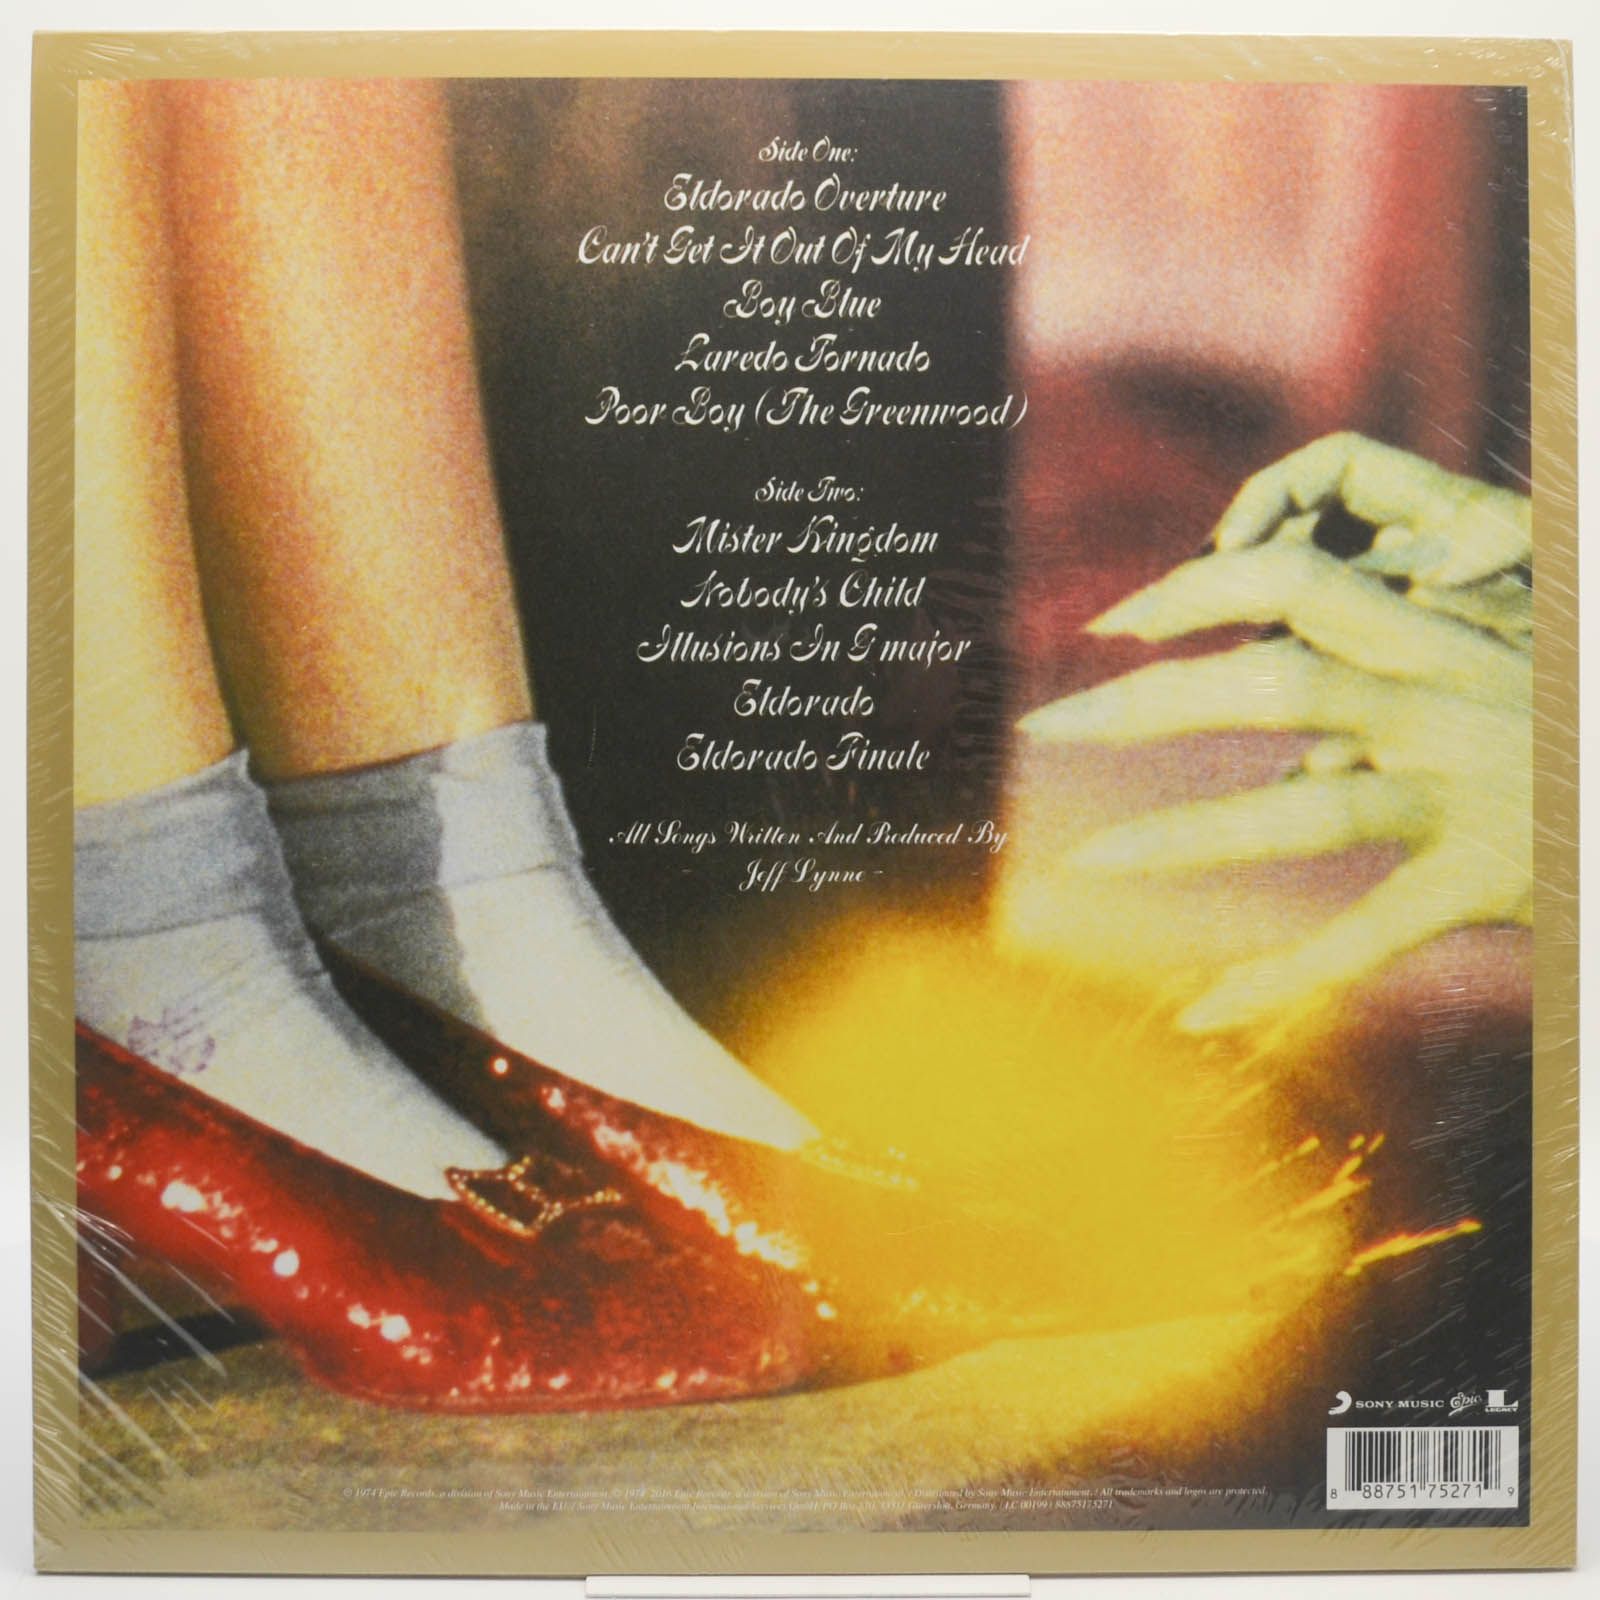 Electric Light Orchestra — Eldorado A Symphony By The Electric Light Orchestra, 1974